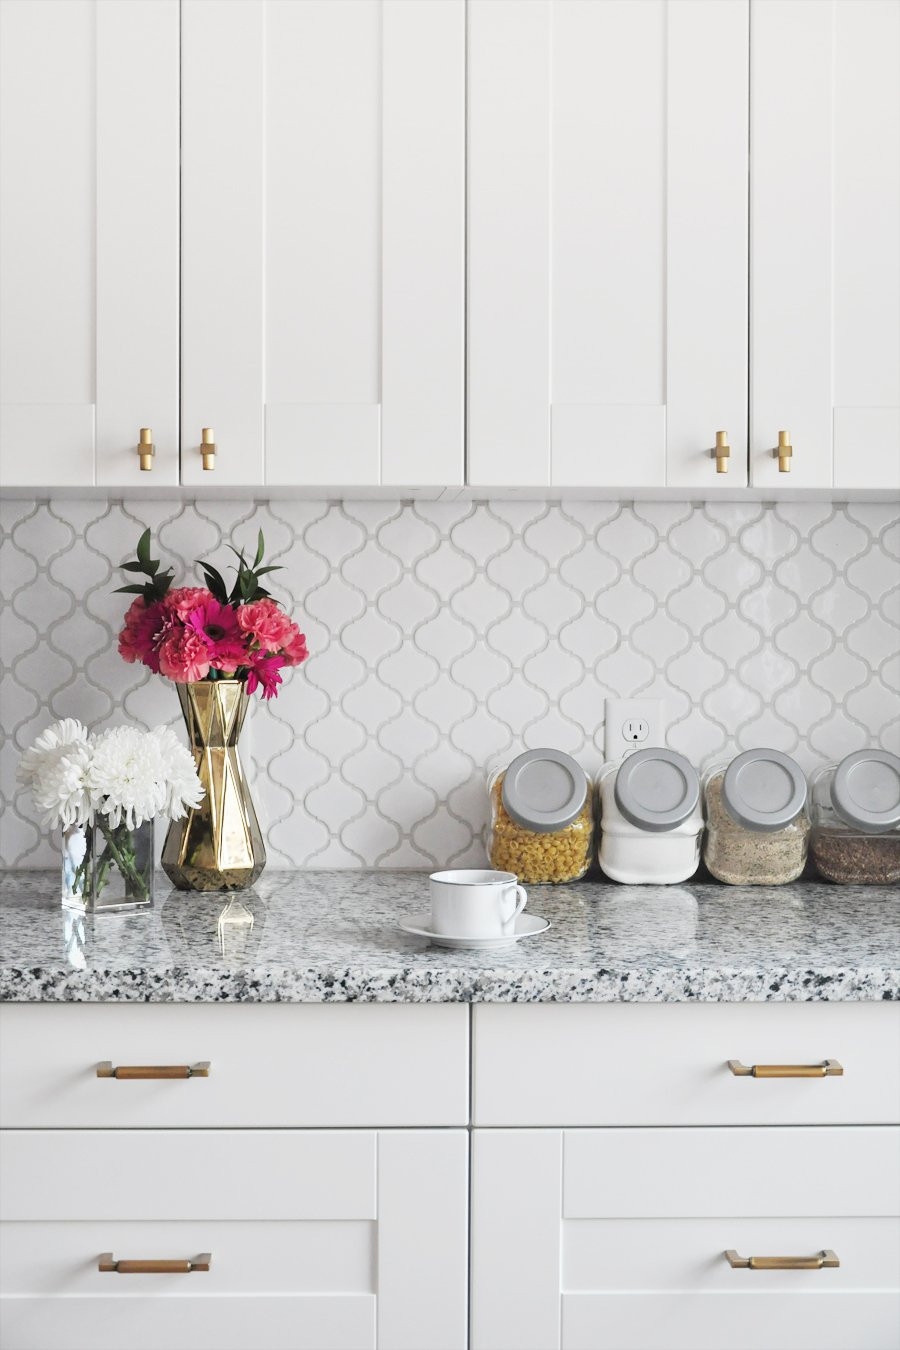 Diy Kitchen Tile
 How To Tile a Kitchen Backsplash DIY Tutorial Sponsored